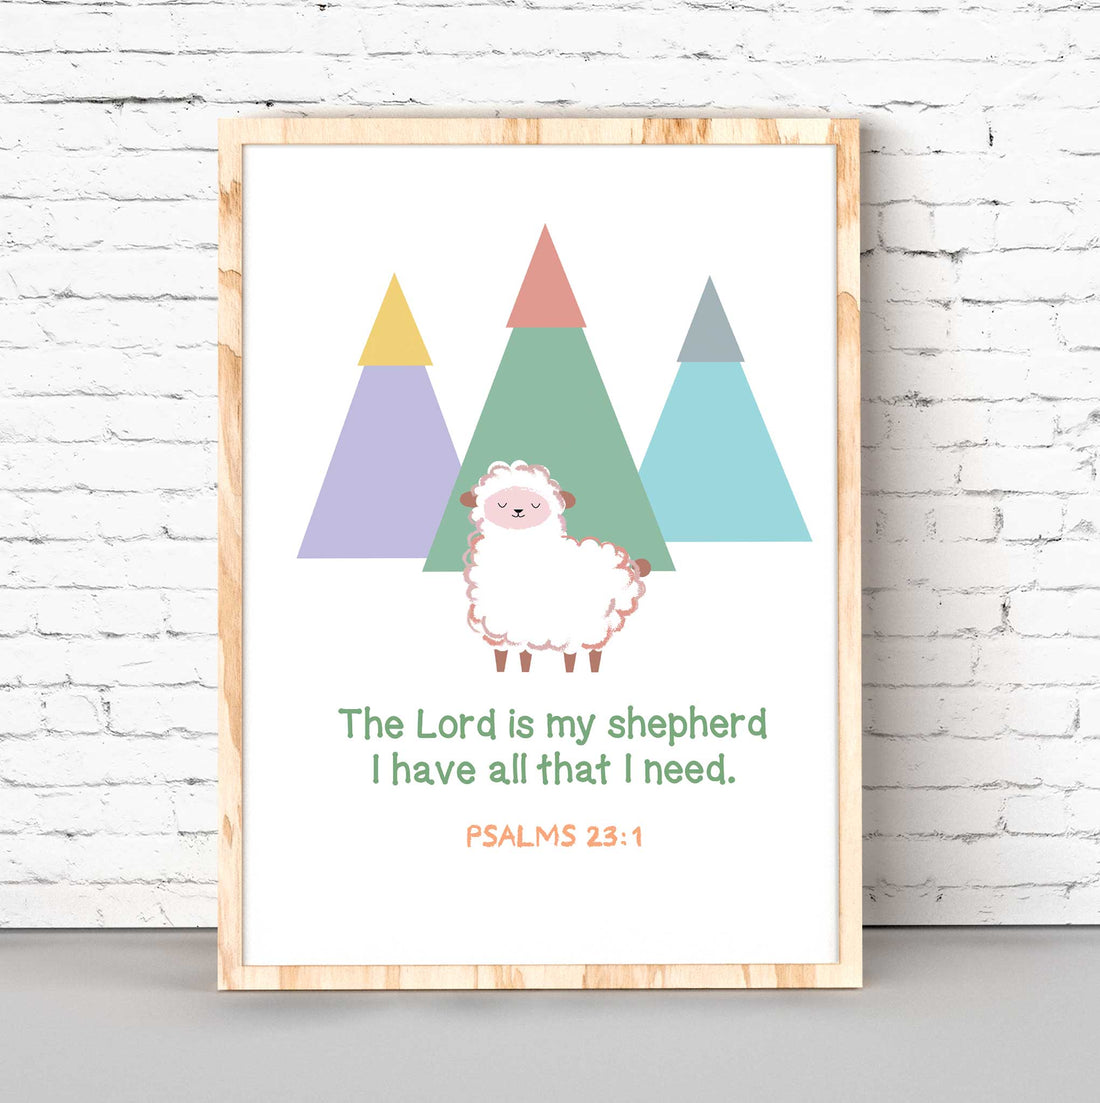 My Shepherd-Psalms 23:1 - Bible Art For You